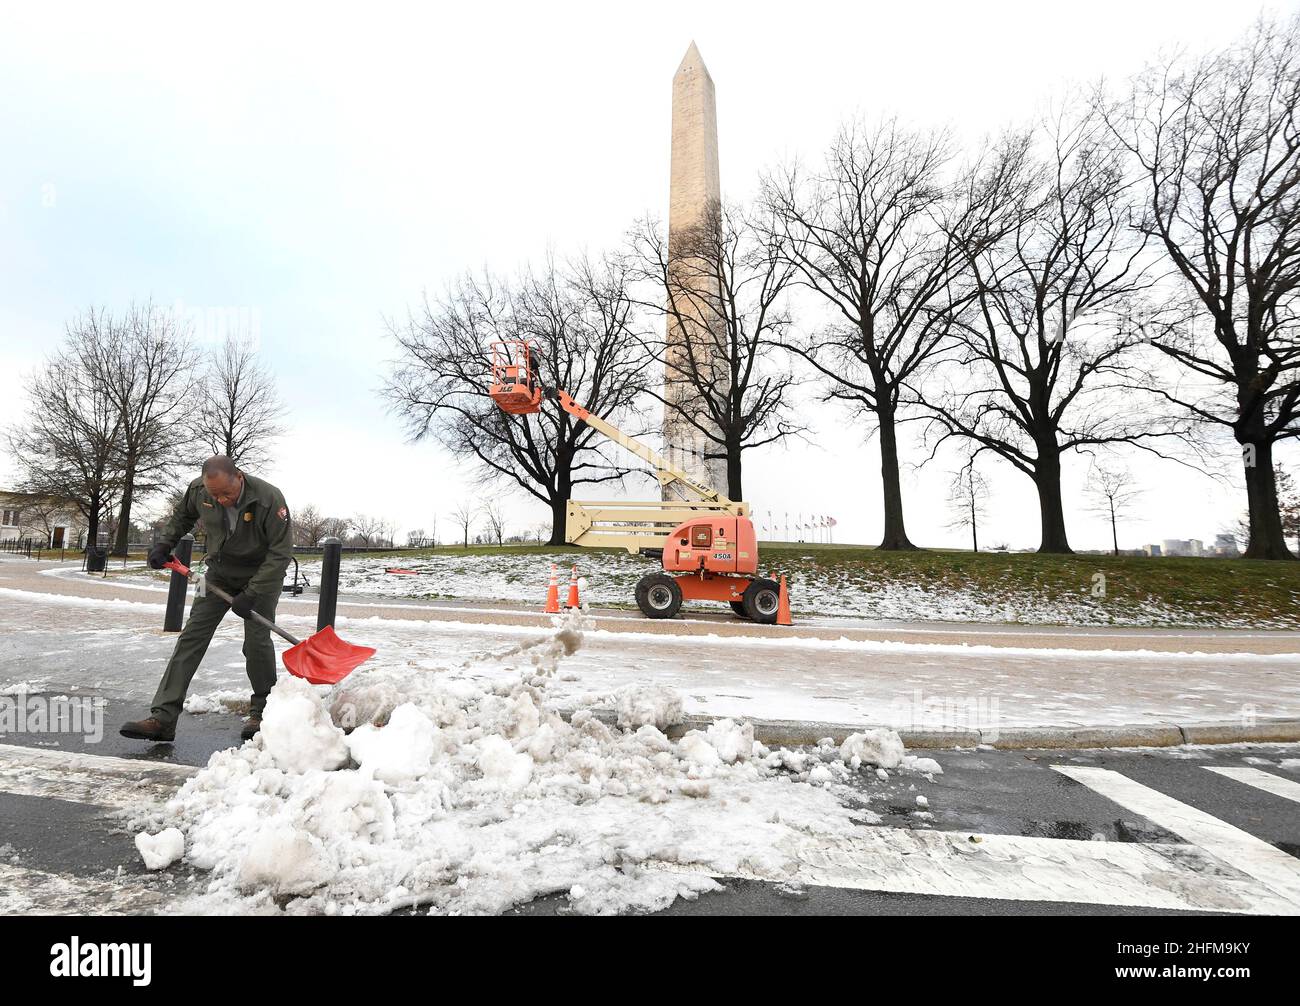 Ein Mitarbeiter des National Park Service schaufelt nach einer stürmischen Nacht in Washington, USA, am 17. Januar 2022 Schnee in der Nähe des Washington Monument. REUTERS/Mike Theiler Stockfoto